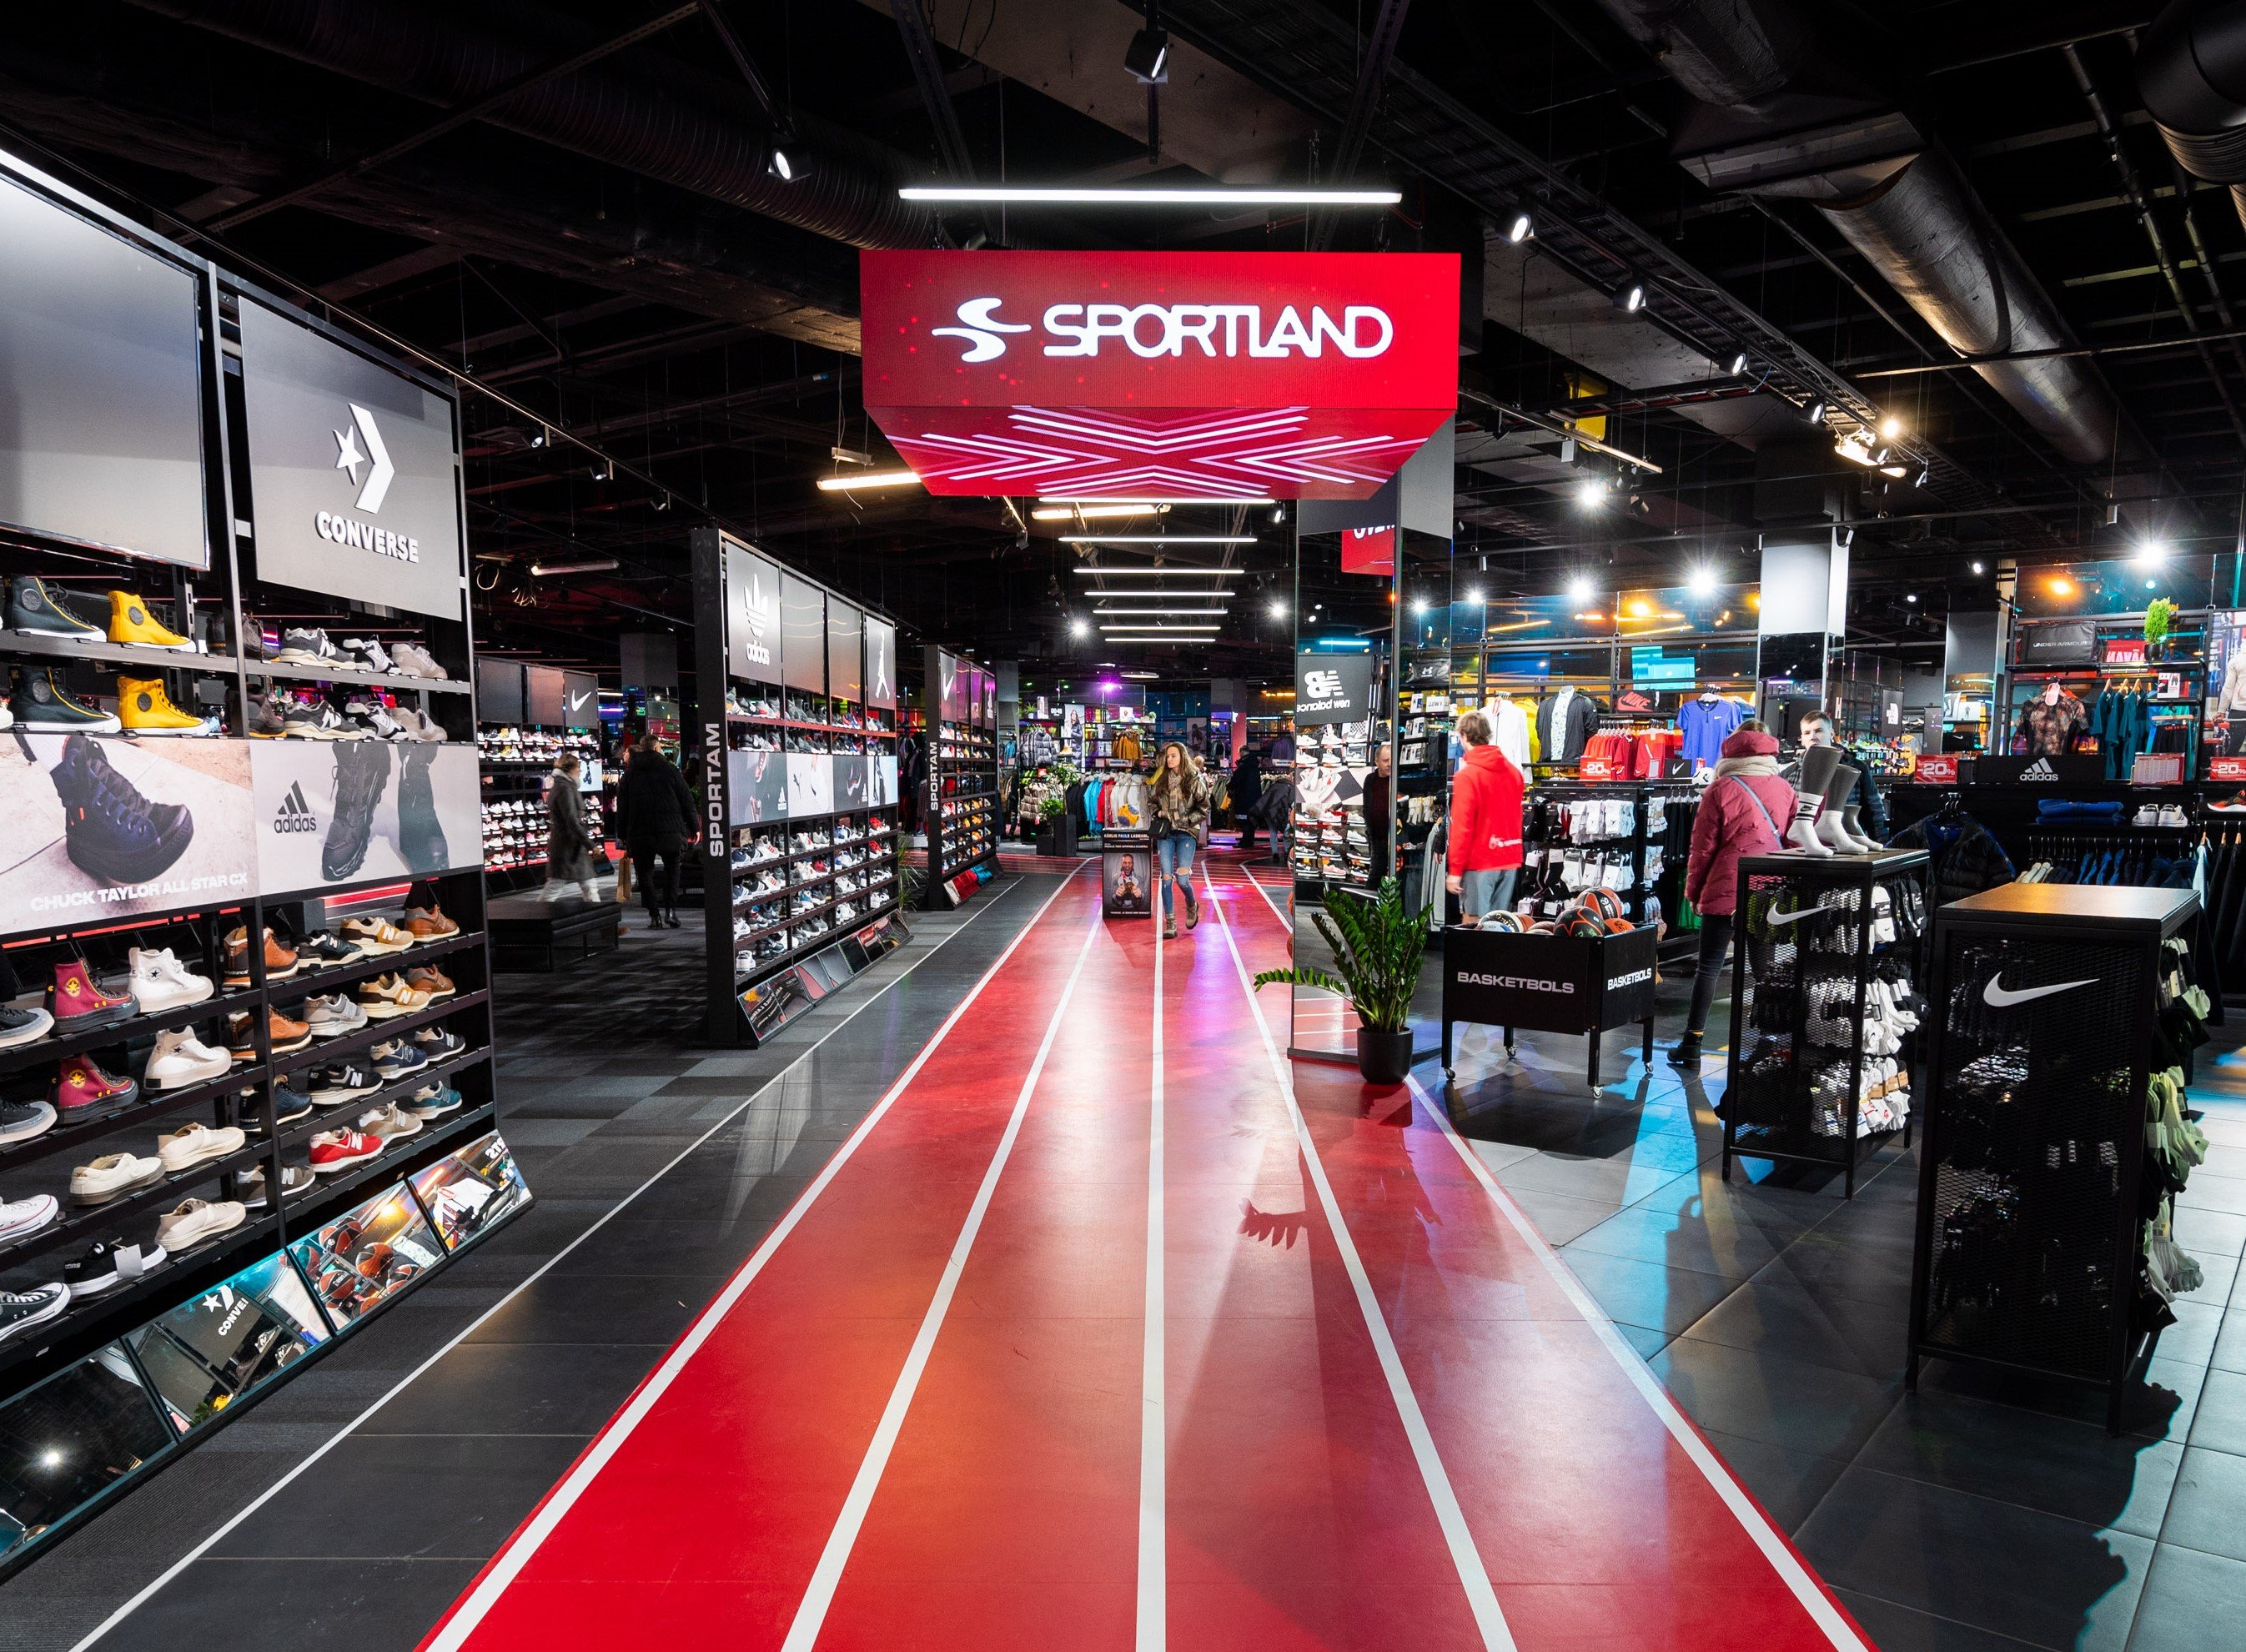 В торговом центре "Spice" открыт крупнейший магазин "Sportland" в Латвии 